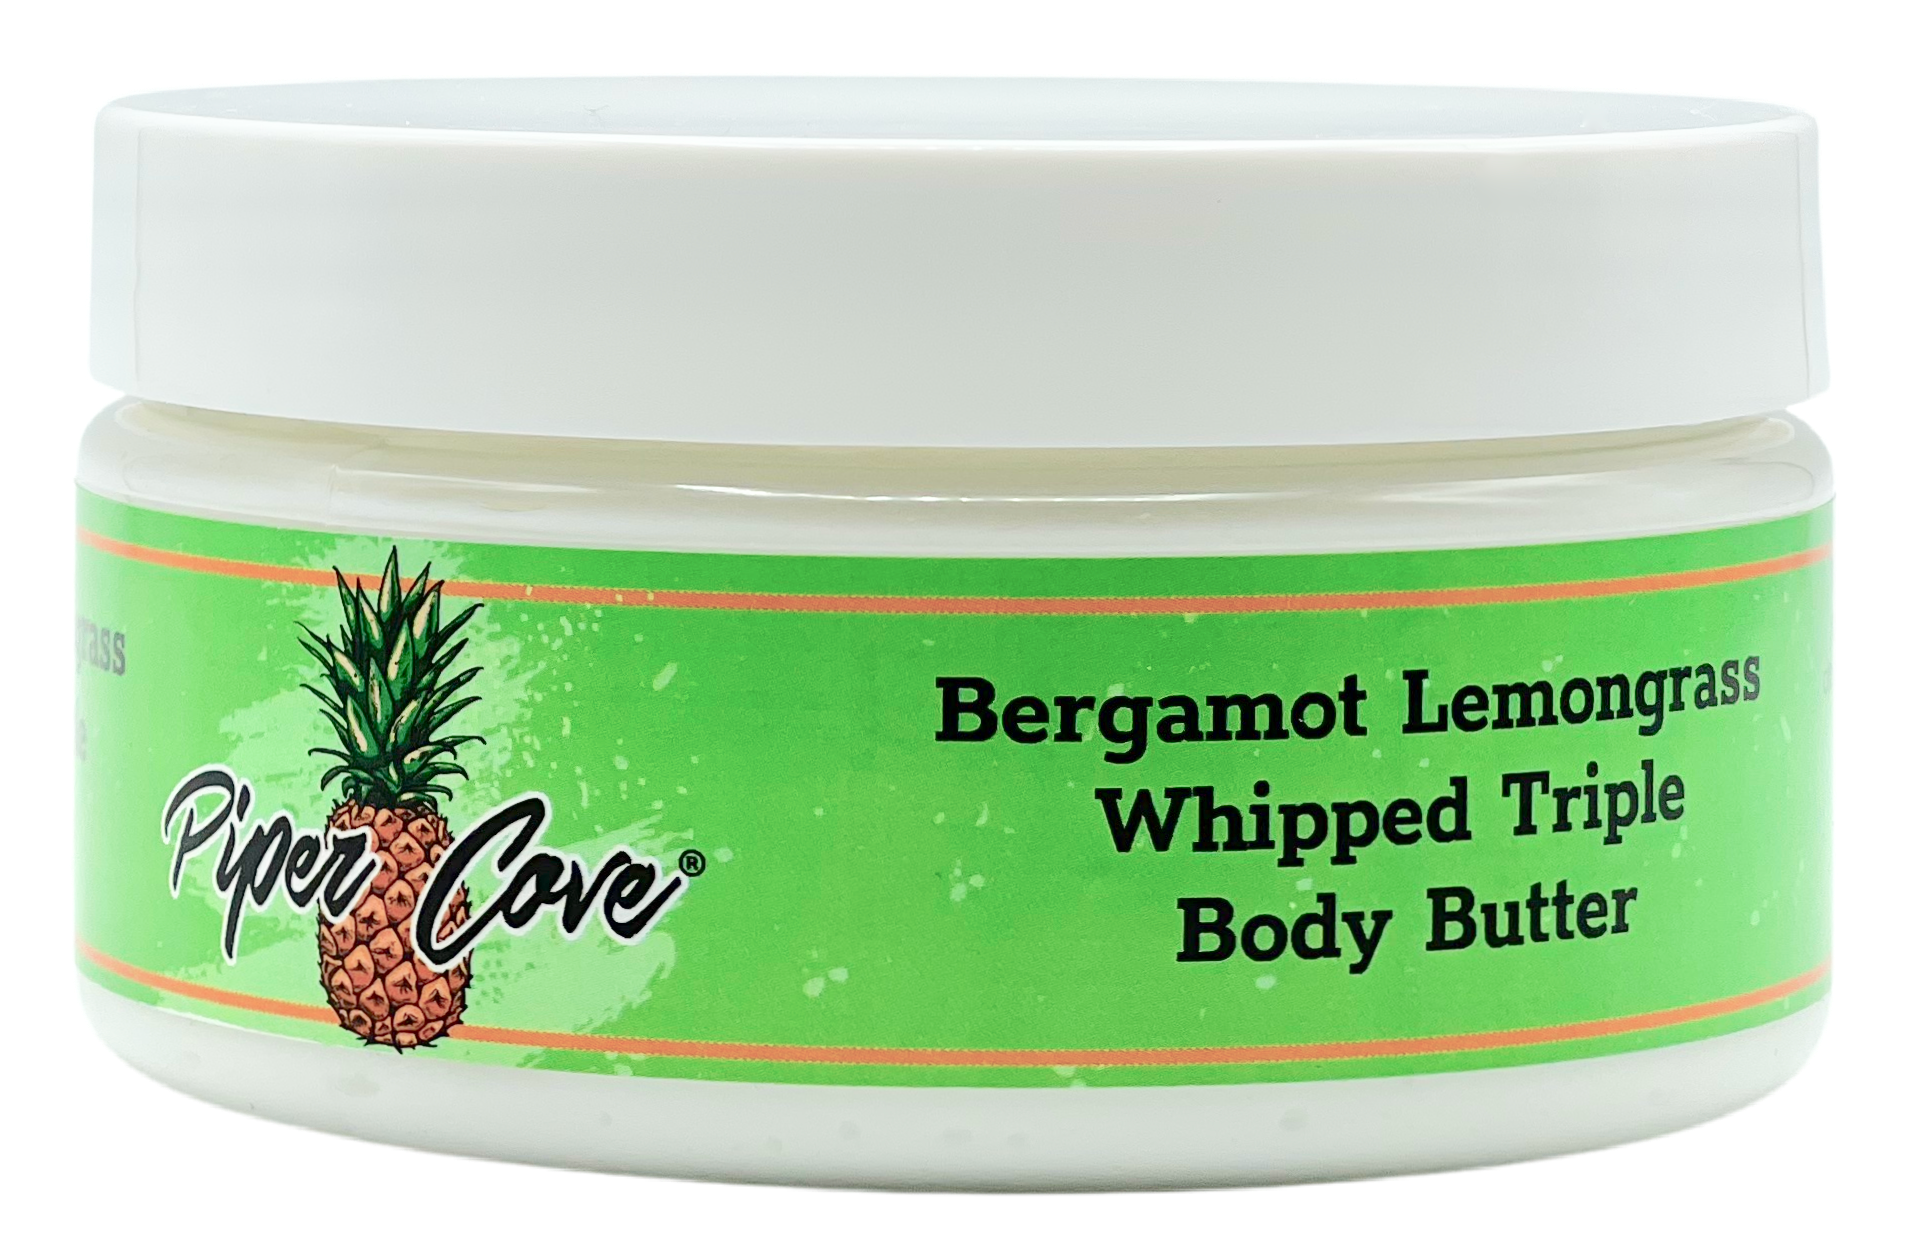 Bergamot Lemongrass Whipped Triple Body Butter | 8 oz